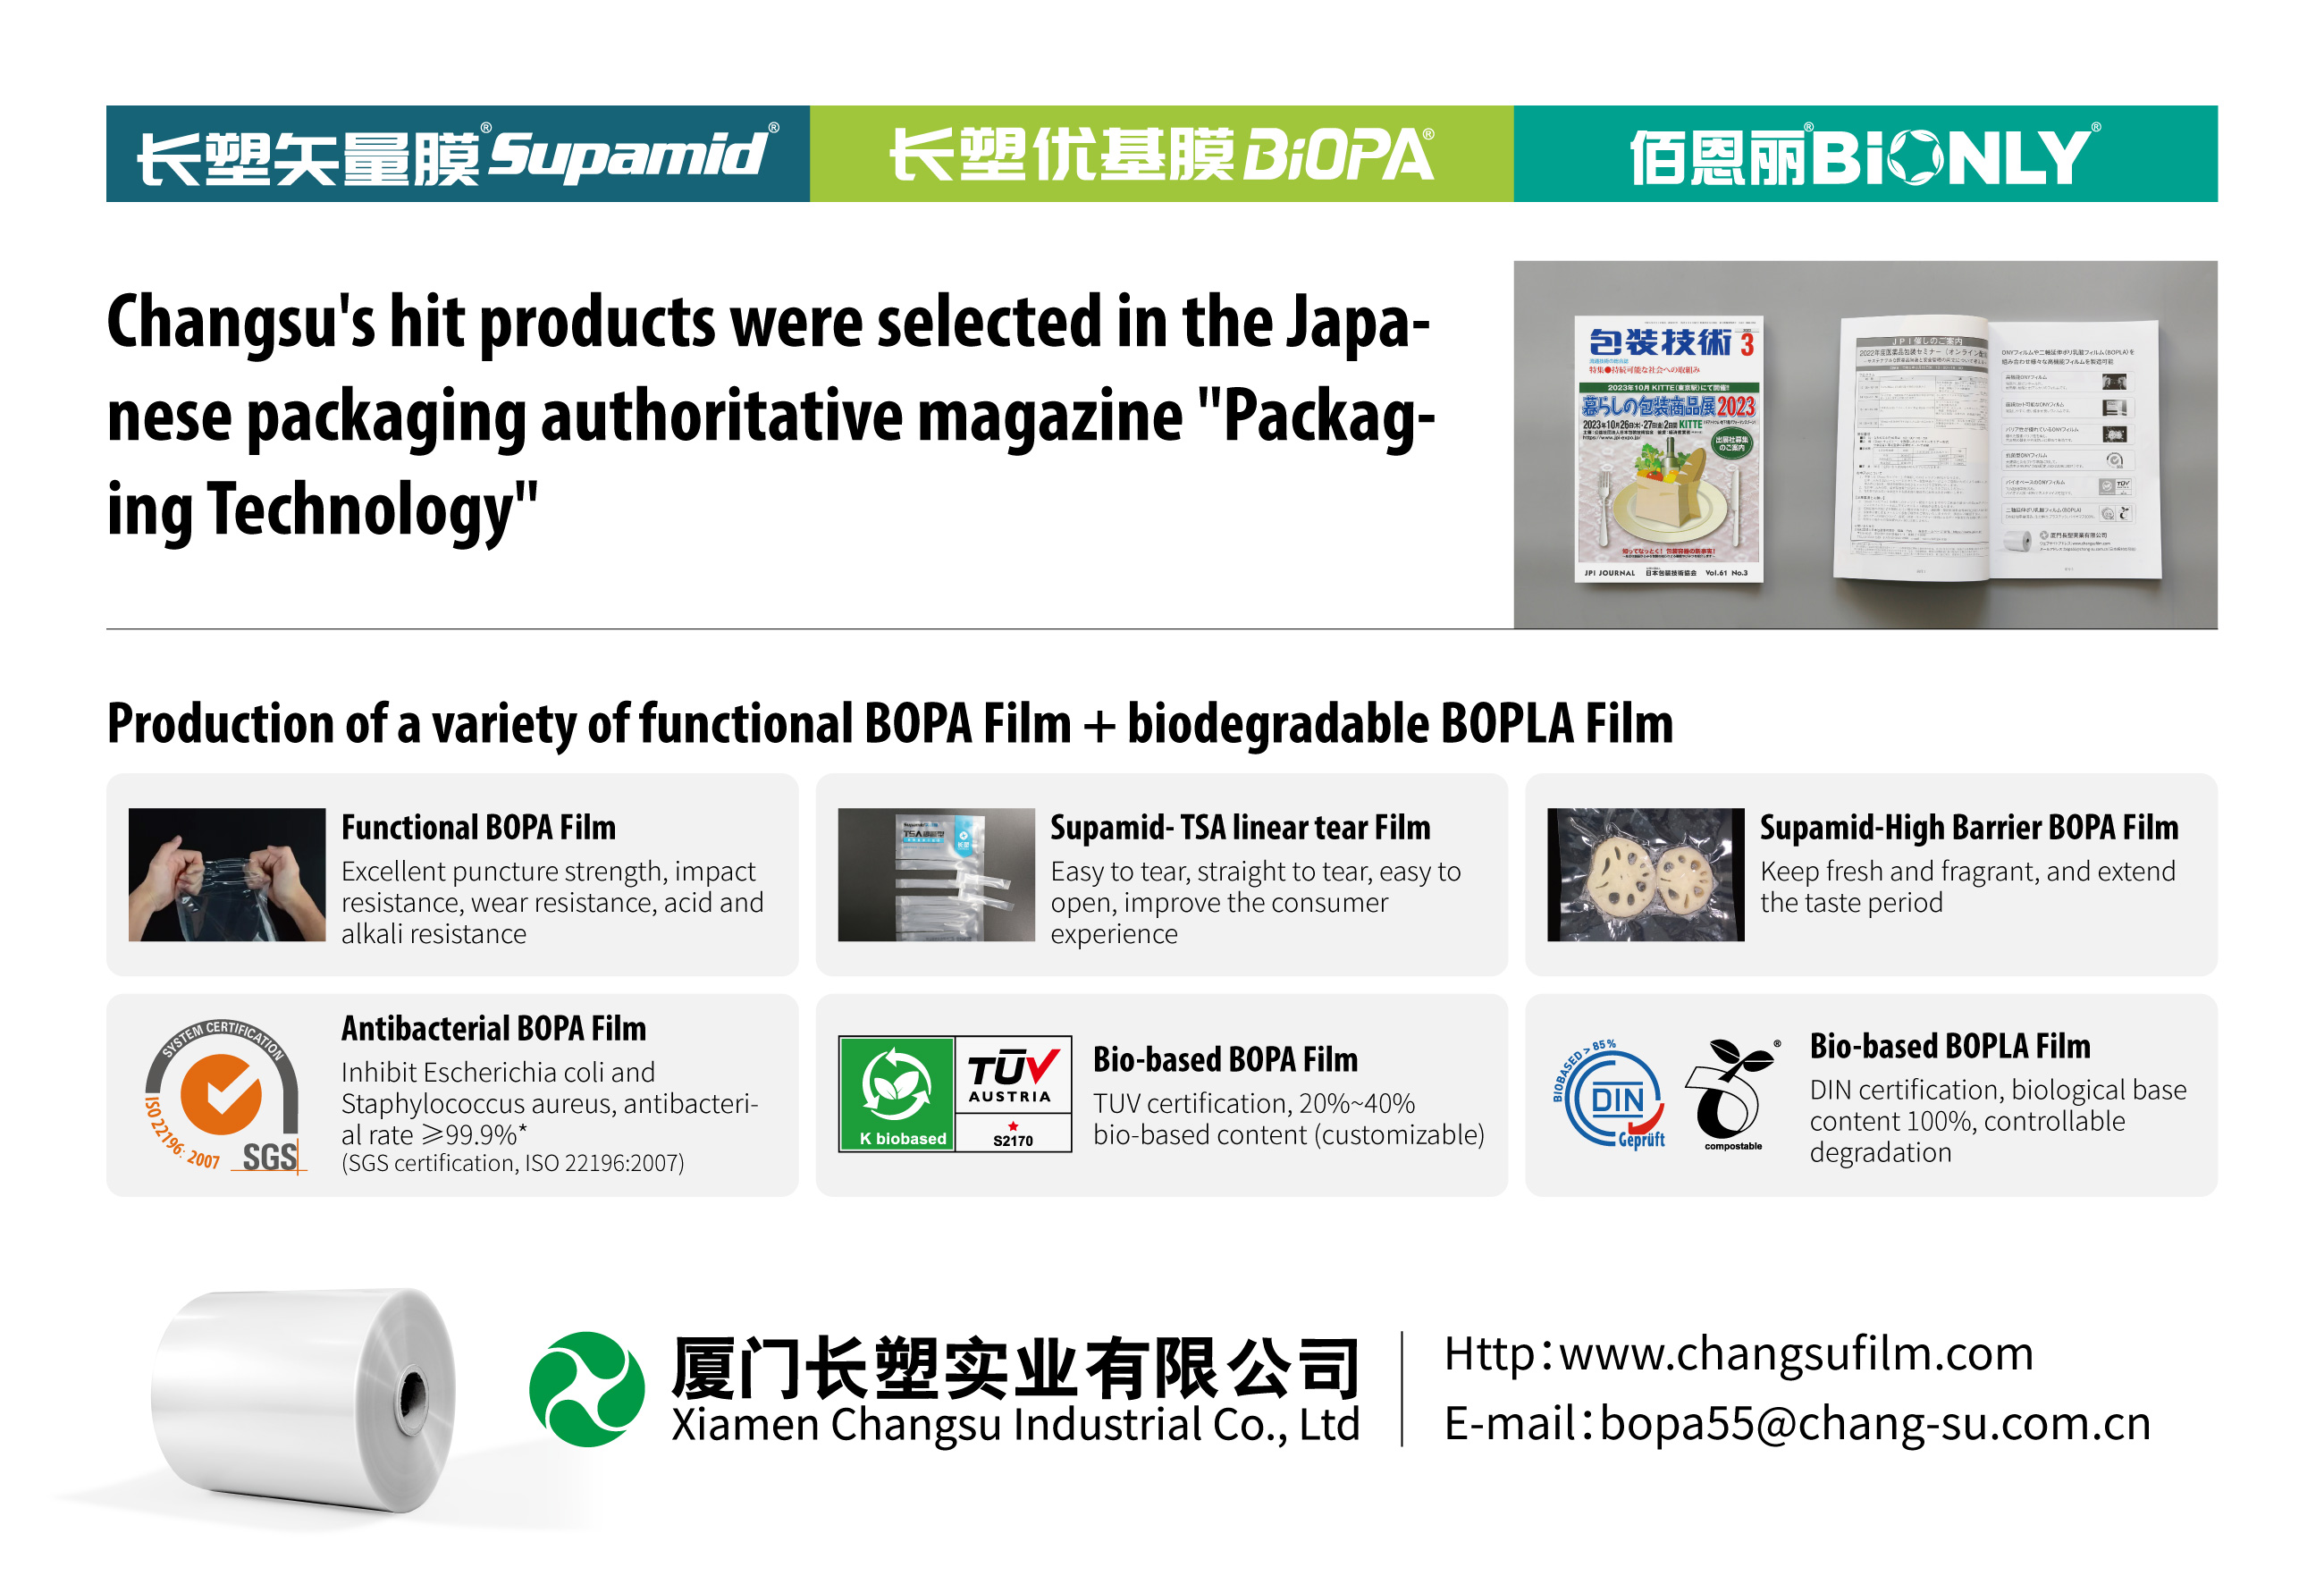 ผลิตภัณฑ์ยอดนิยมของ Changsu ได้รับเลือกในนิตยสารบรรจุภัณฑ์ชั้นนำของญี่ปุ่น “Packaging Technology”